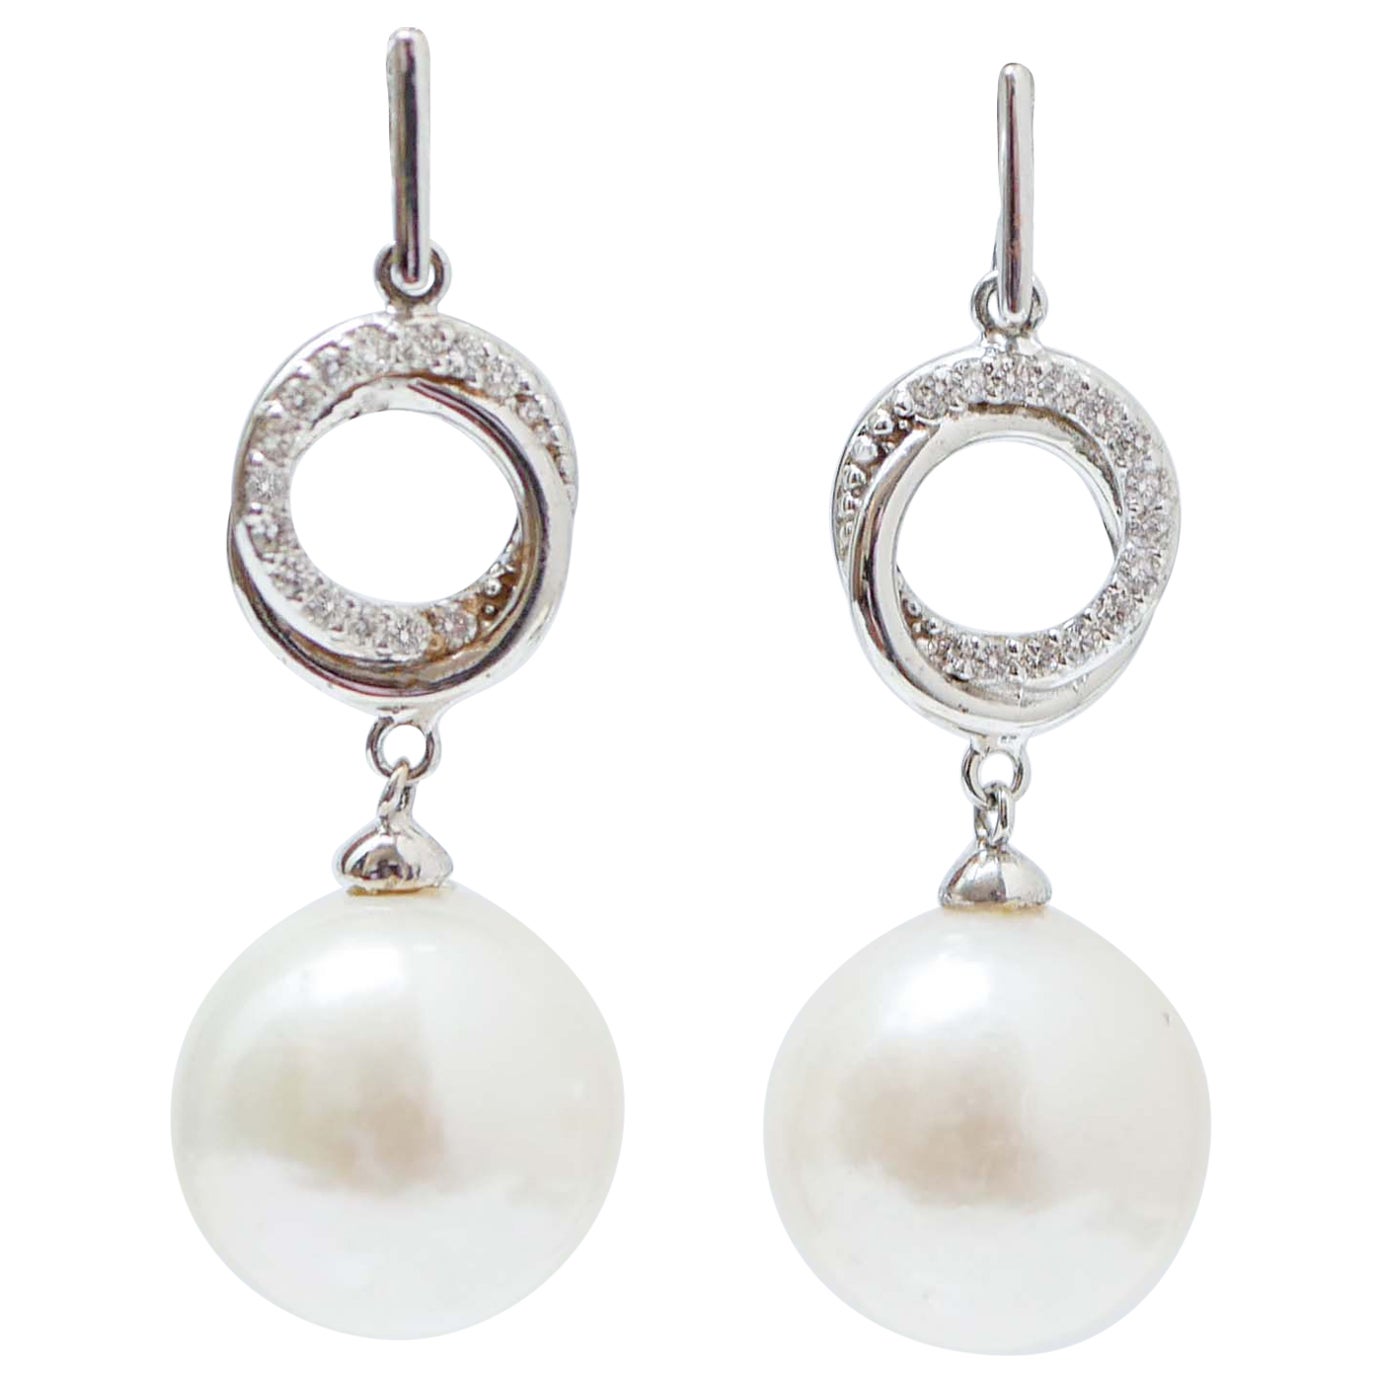 White Pearls, Diamonds, 18 Karat White Gold Earrings.